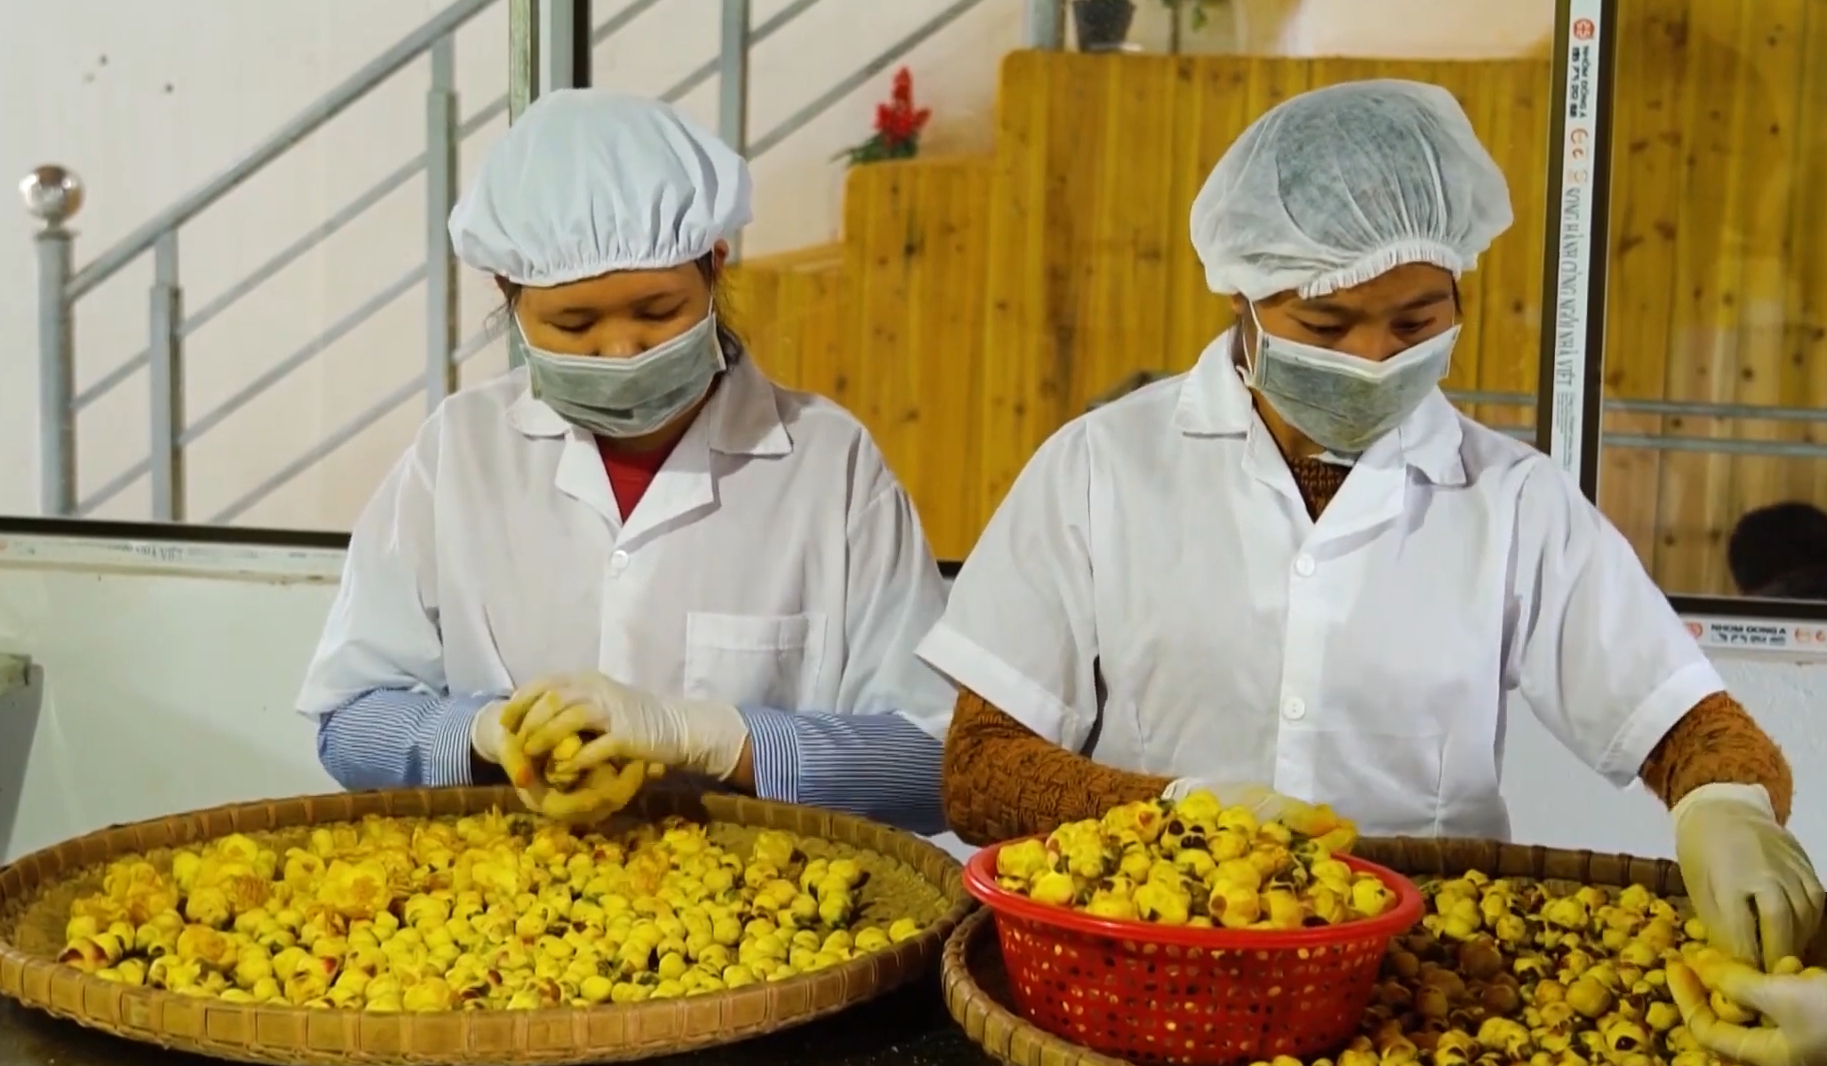 Doanh thu hàng năm từ cây trà hoa vàng trên địa bàn huyện Ba Chẽ đạt khoảng trên 20 tỷ đồng. Ảnh: Nguyễn Thành.